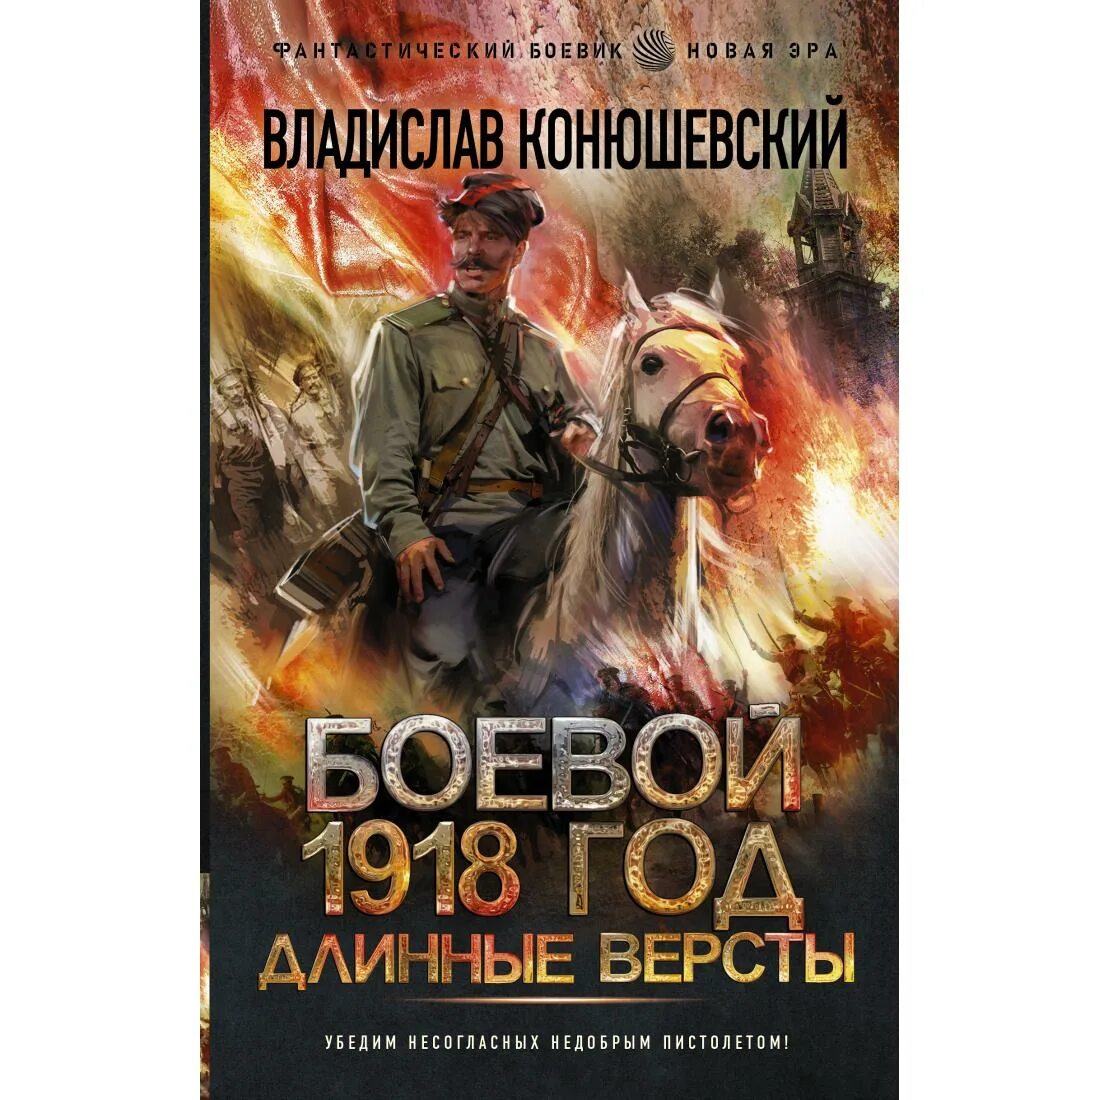 Конюшевский боевой 1918 год 4. Книга боевой 1918